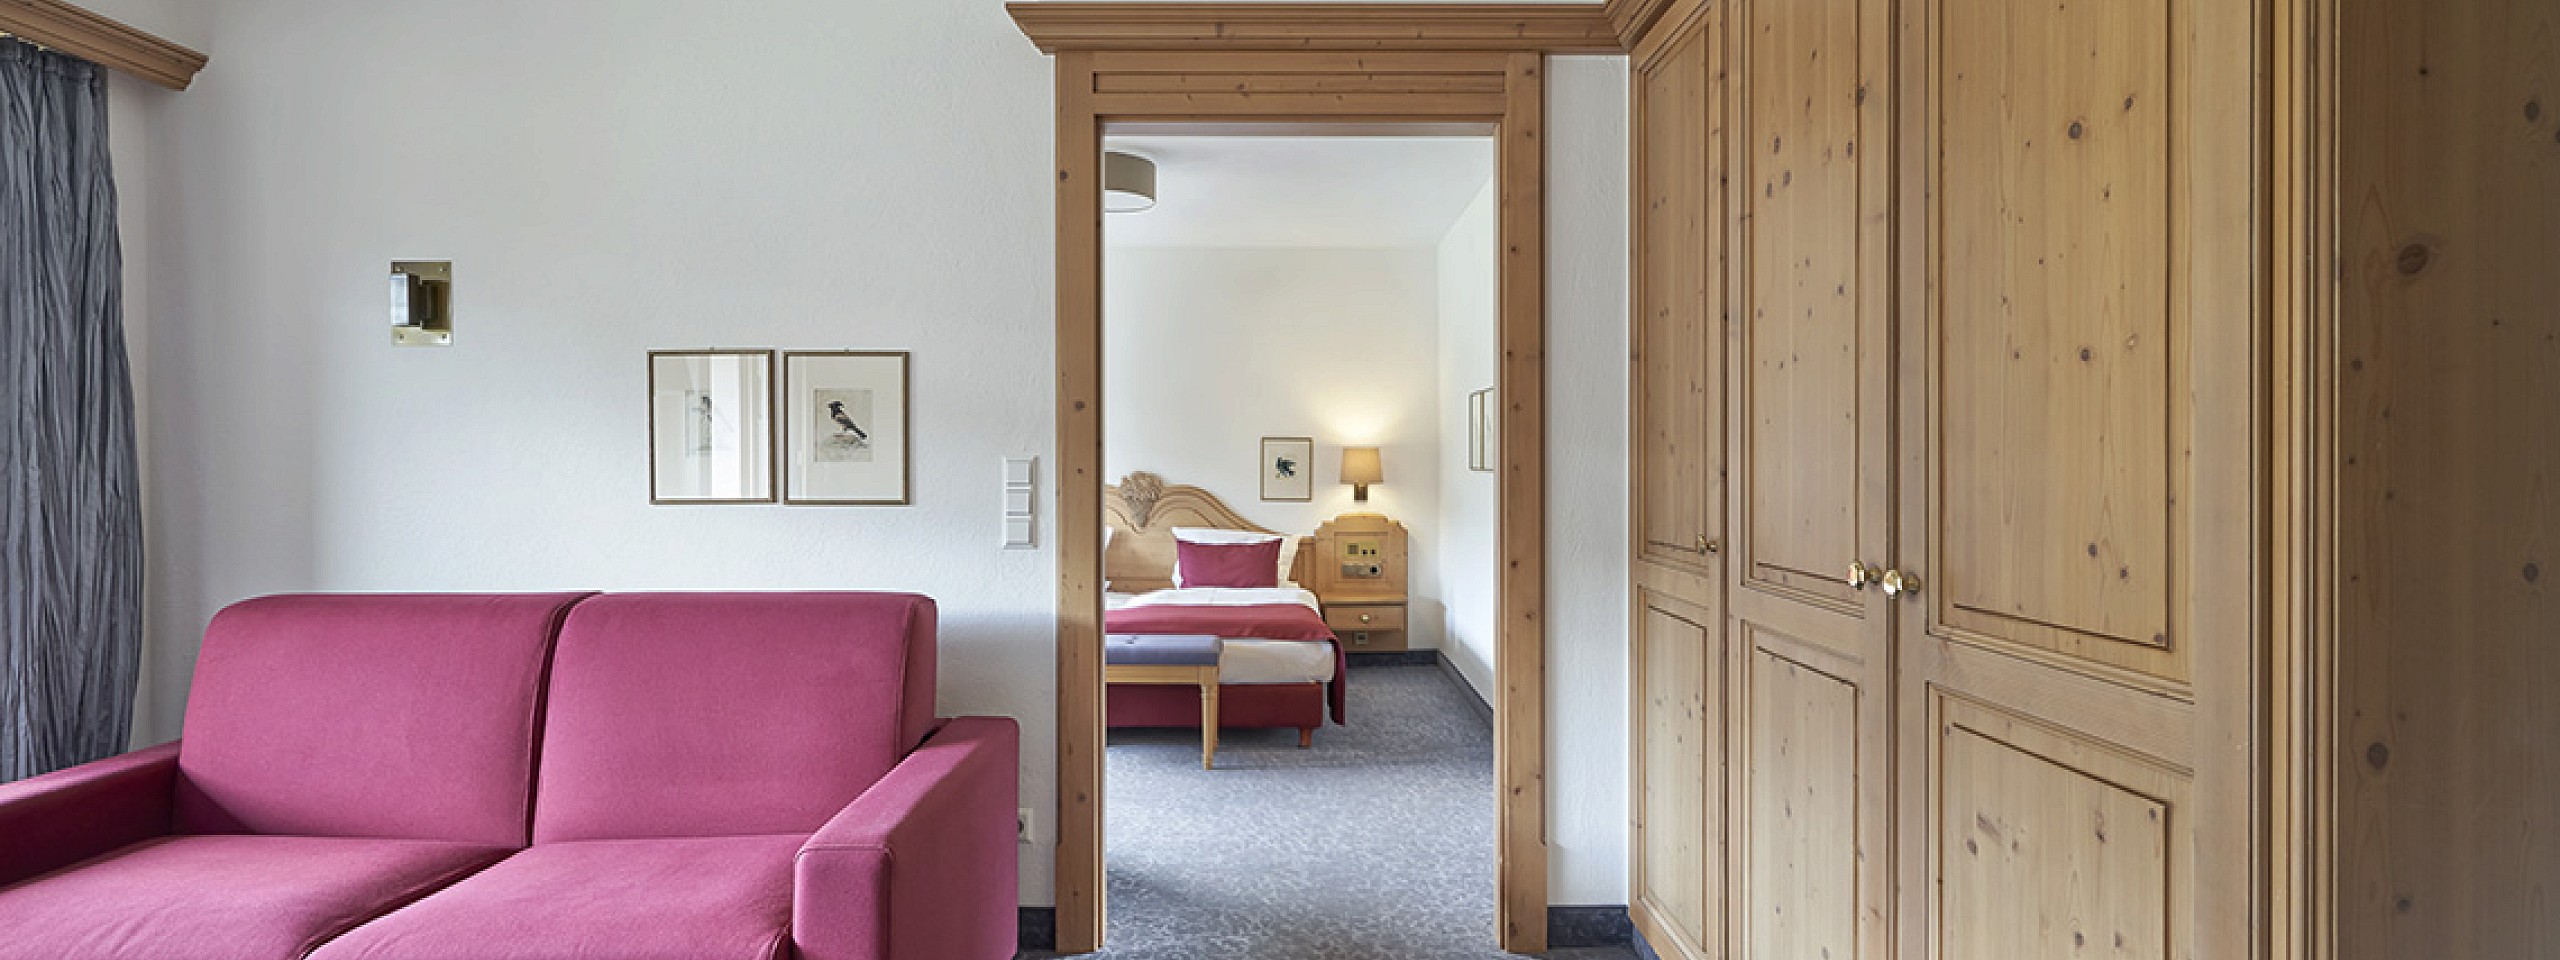 Blick in eines der Hotelzimmer im Schwarzwald mit rotem Sofa und Bett im Hintergrund.